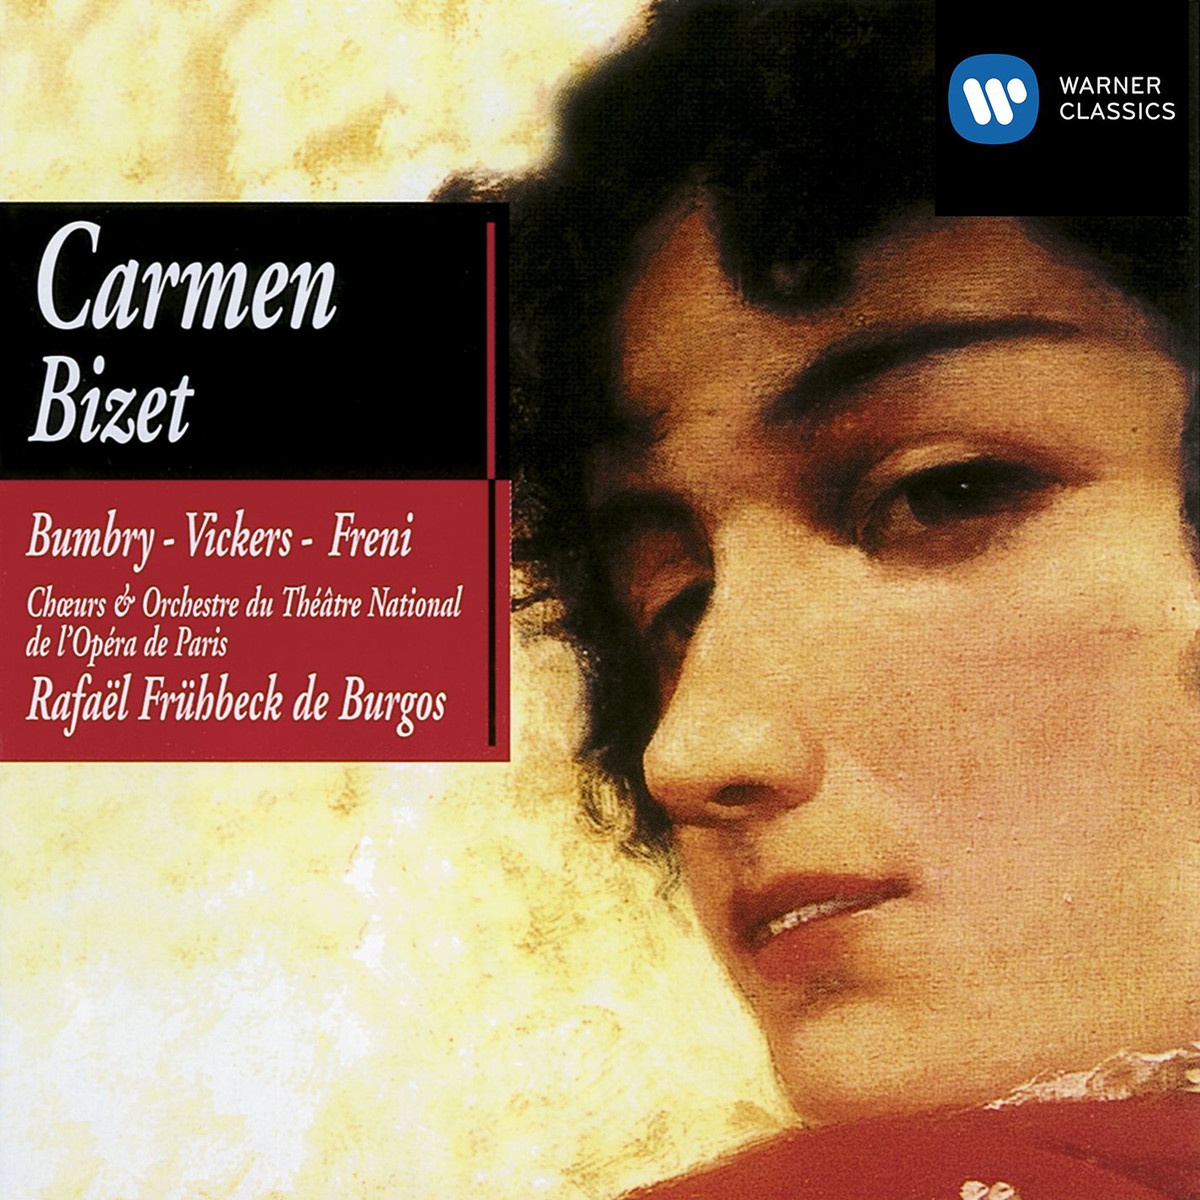 Carmen (1990 Digital Remaster), ACT 2: Les tringles des sistres